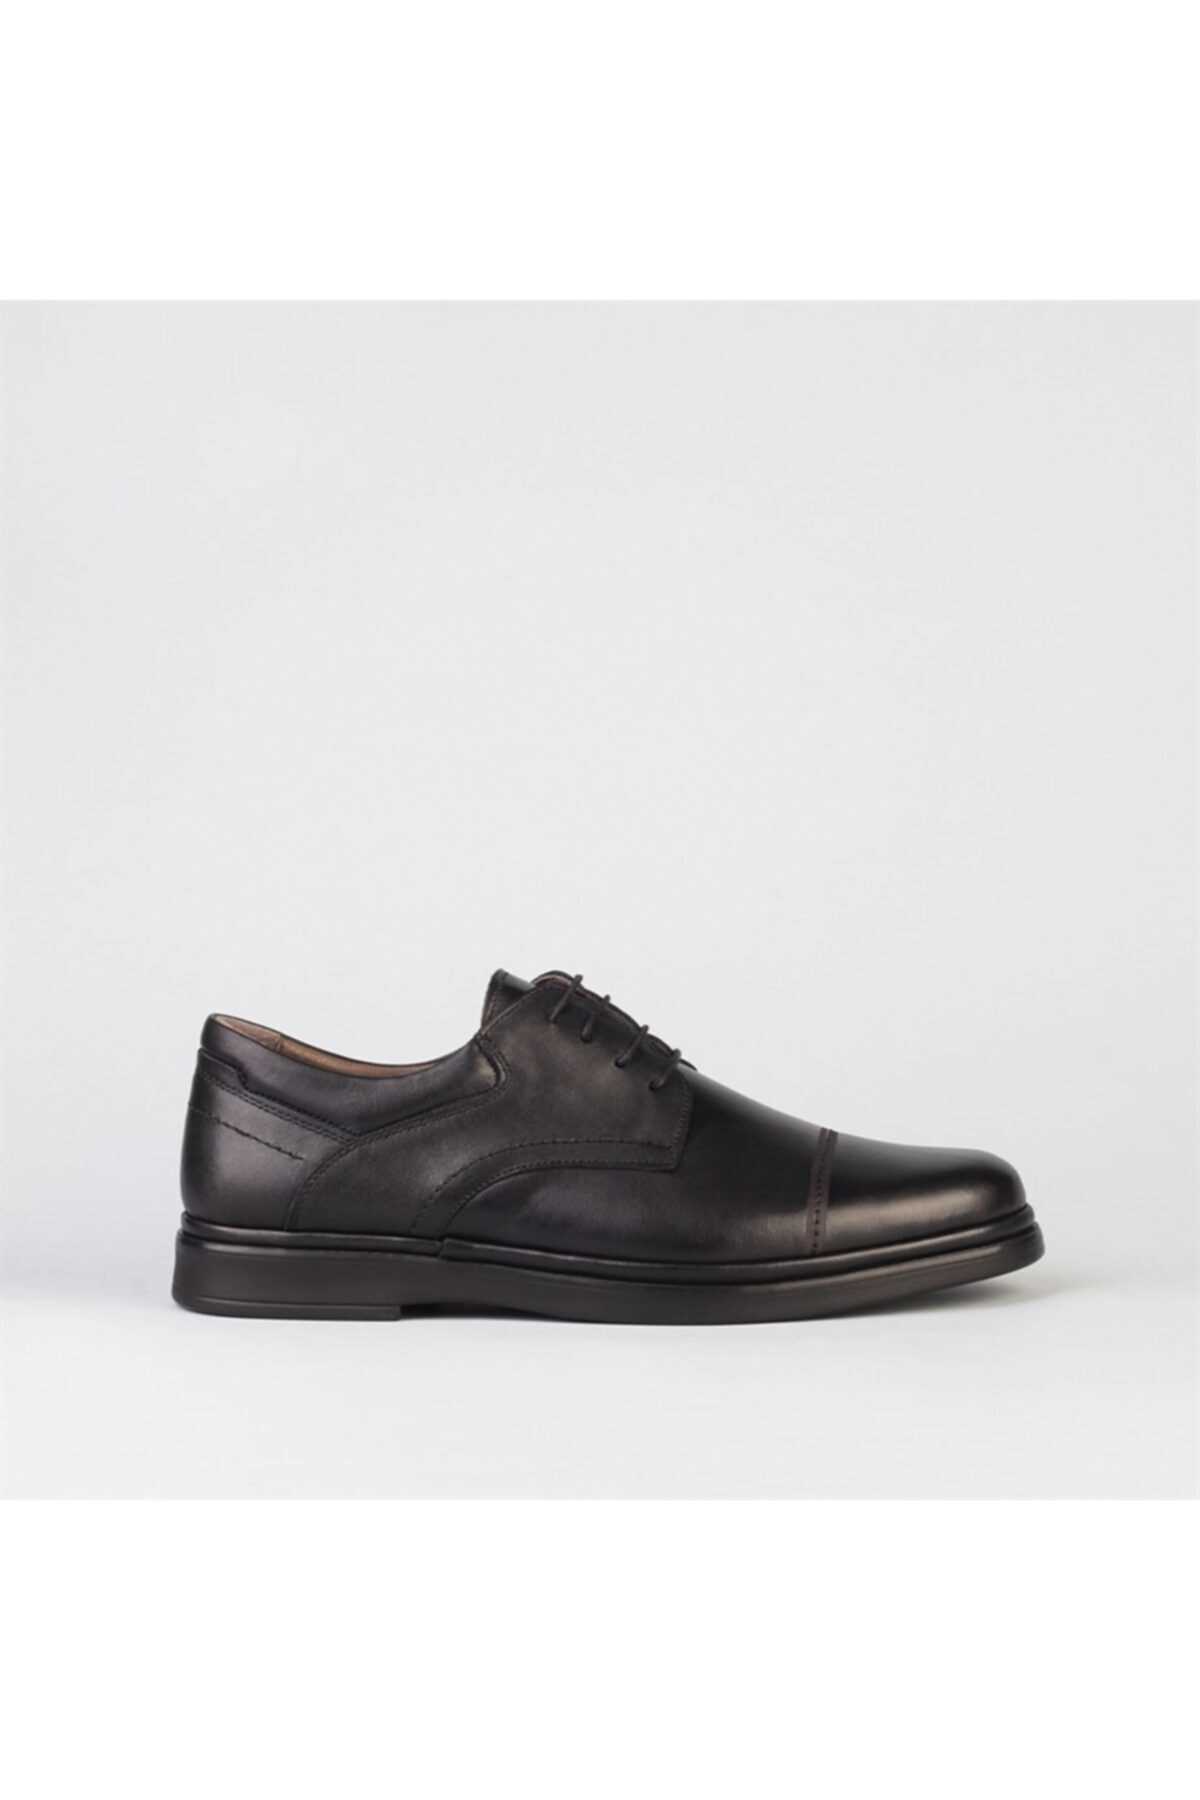 خرید پستی کفش چرم طبیعی مردانه برند Cabani رنگ مشکی کد ty212068916